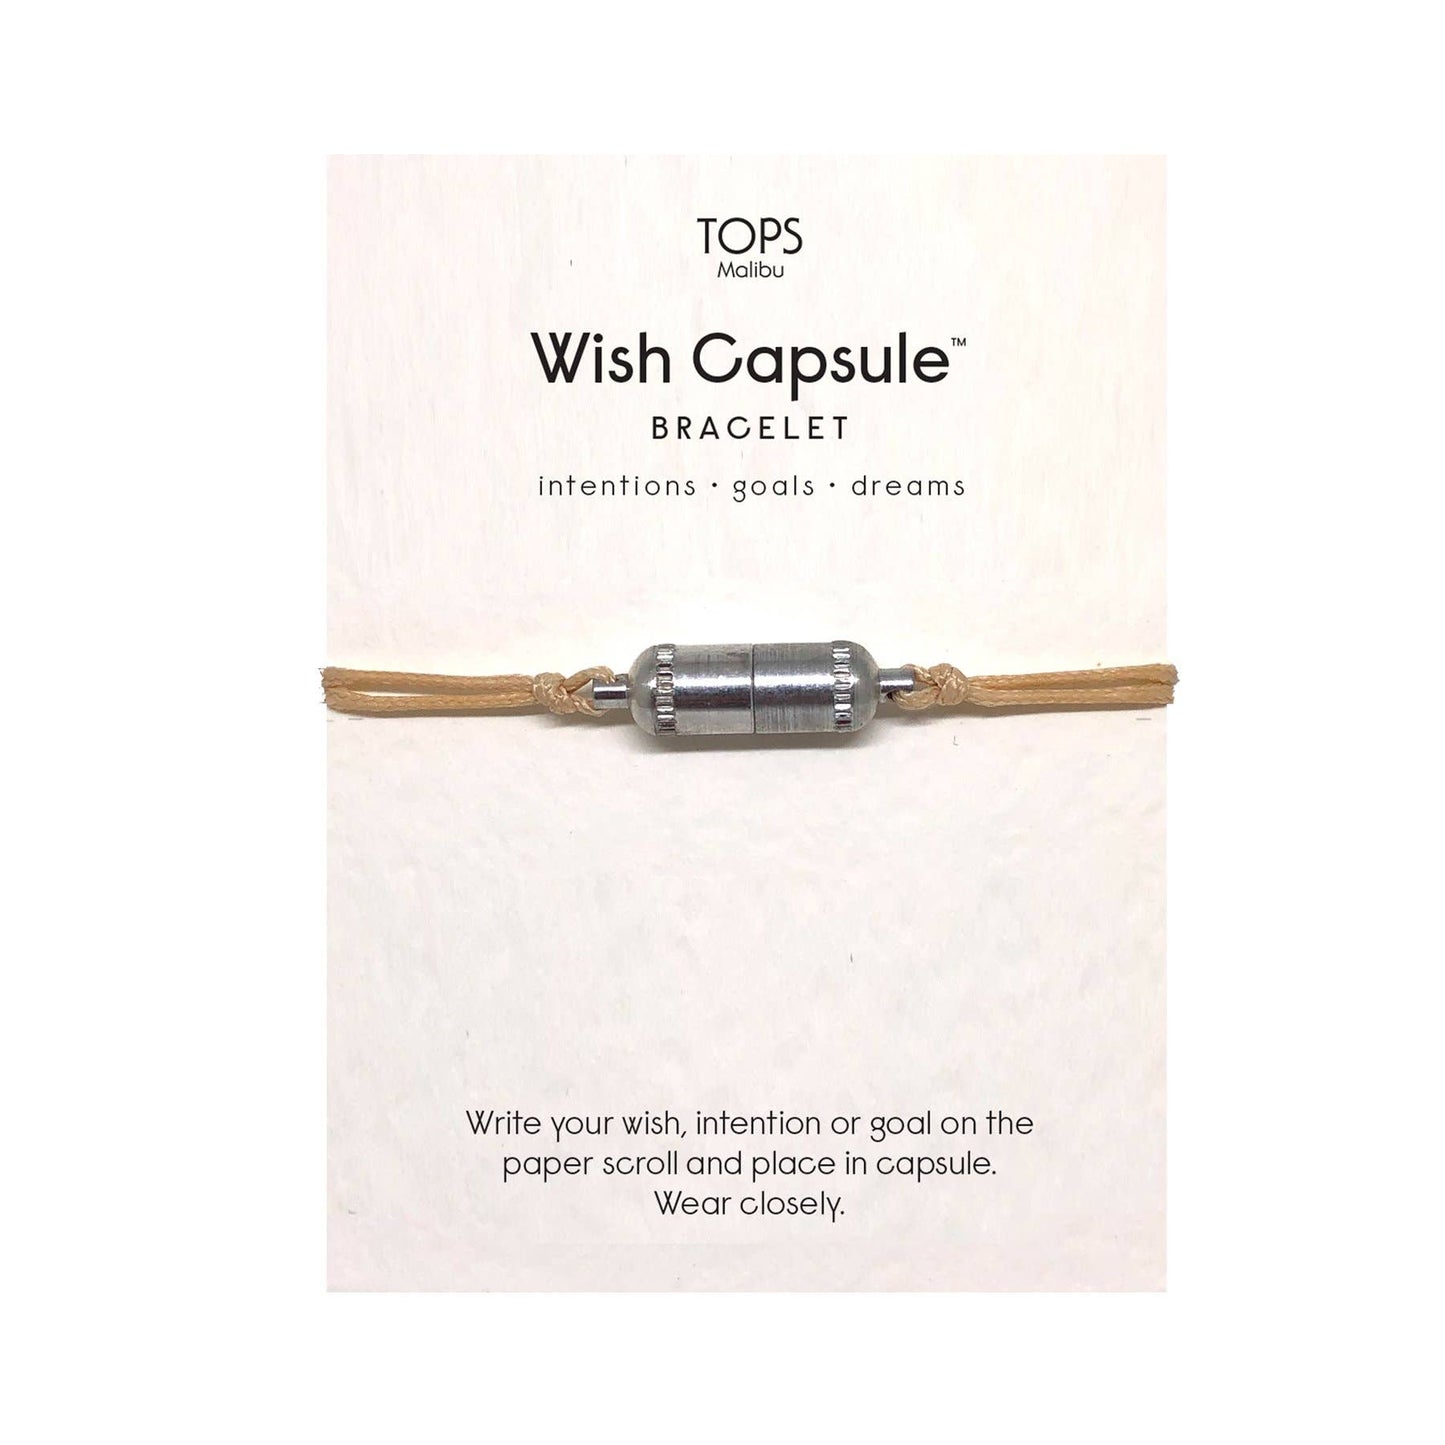 TM - Silver Wish Capsule Bracelet w/ Scrolls